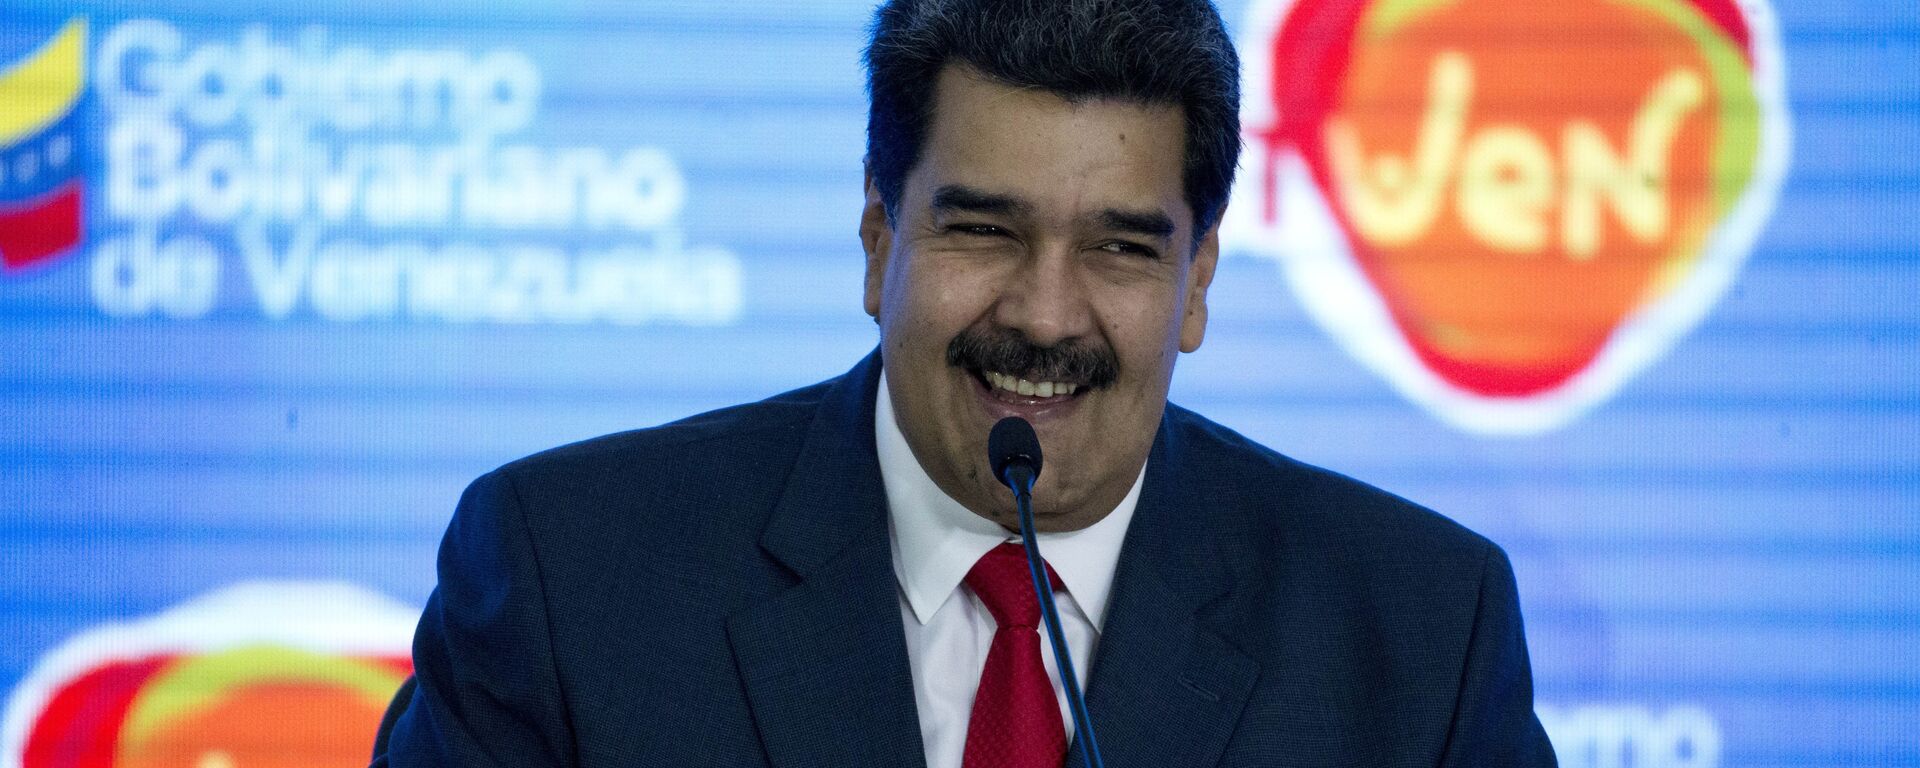 Nicolás Maduro, presidente de Venezuela - Sputnik Mundo, 1920, 21.11.2021